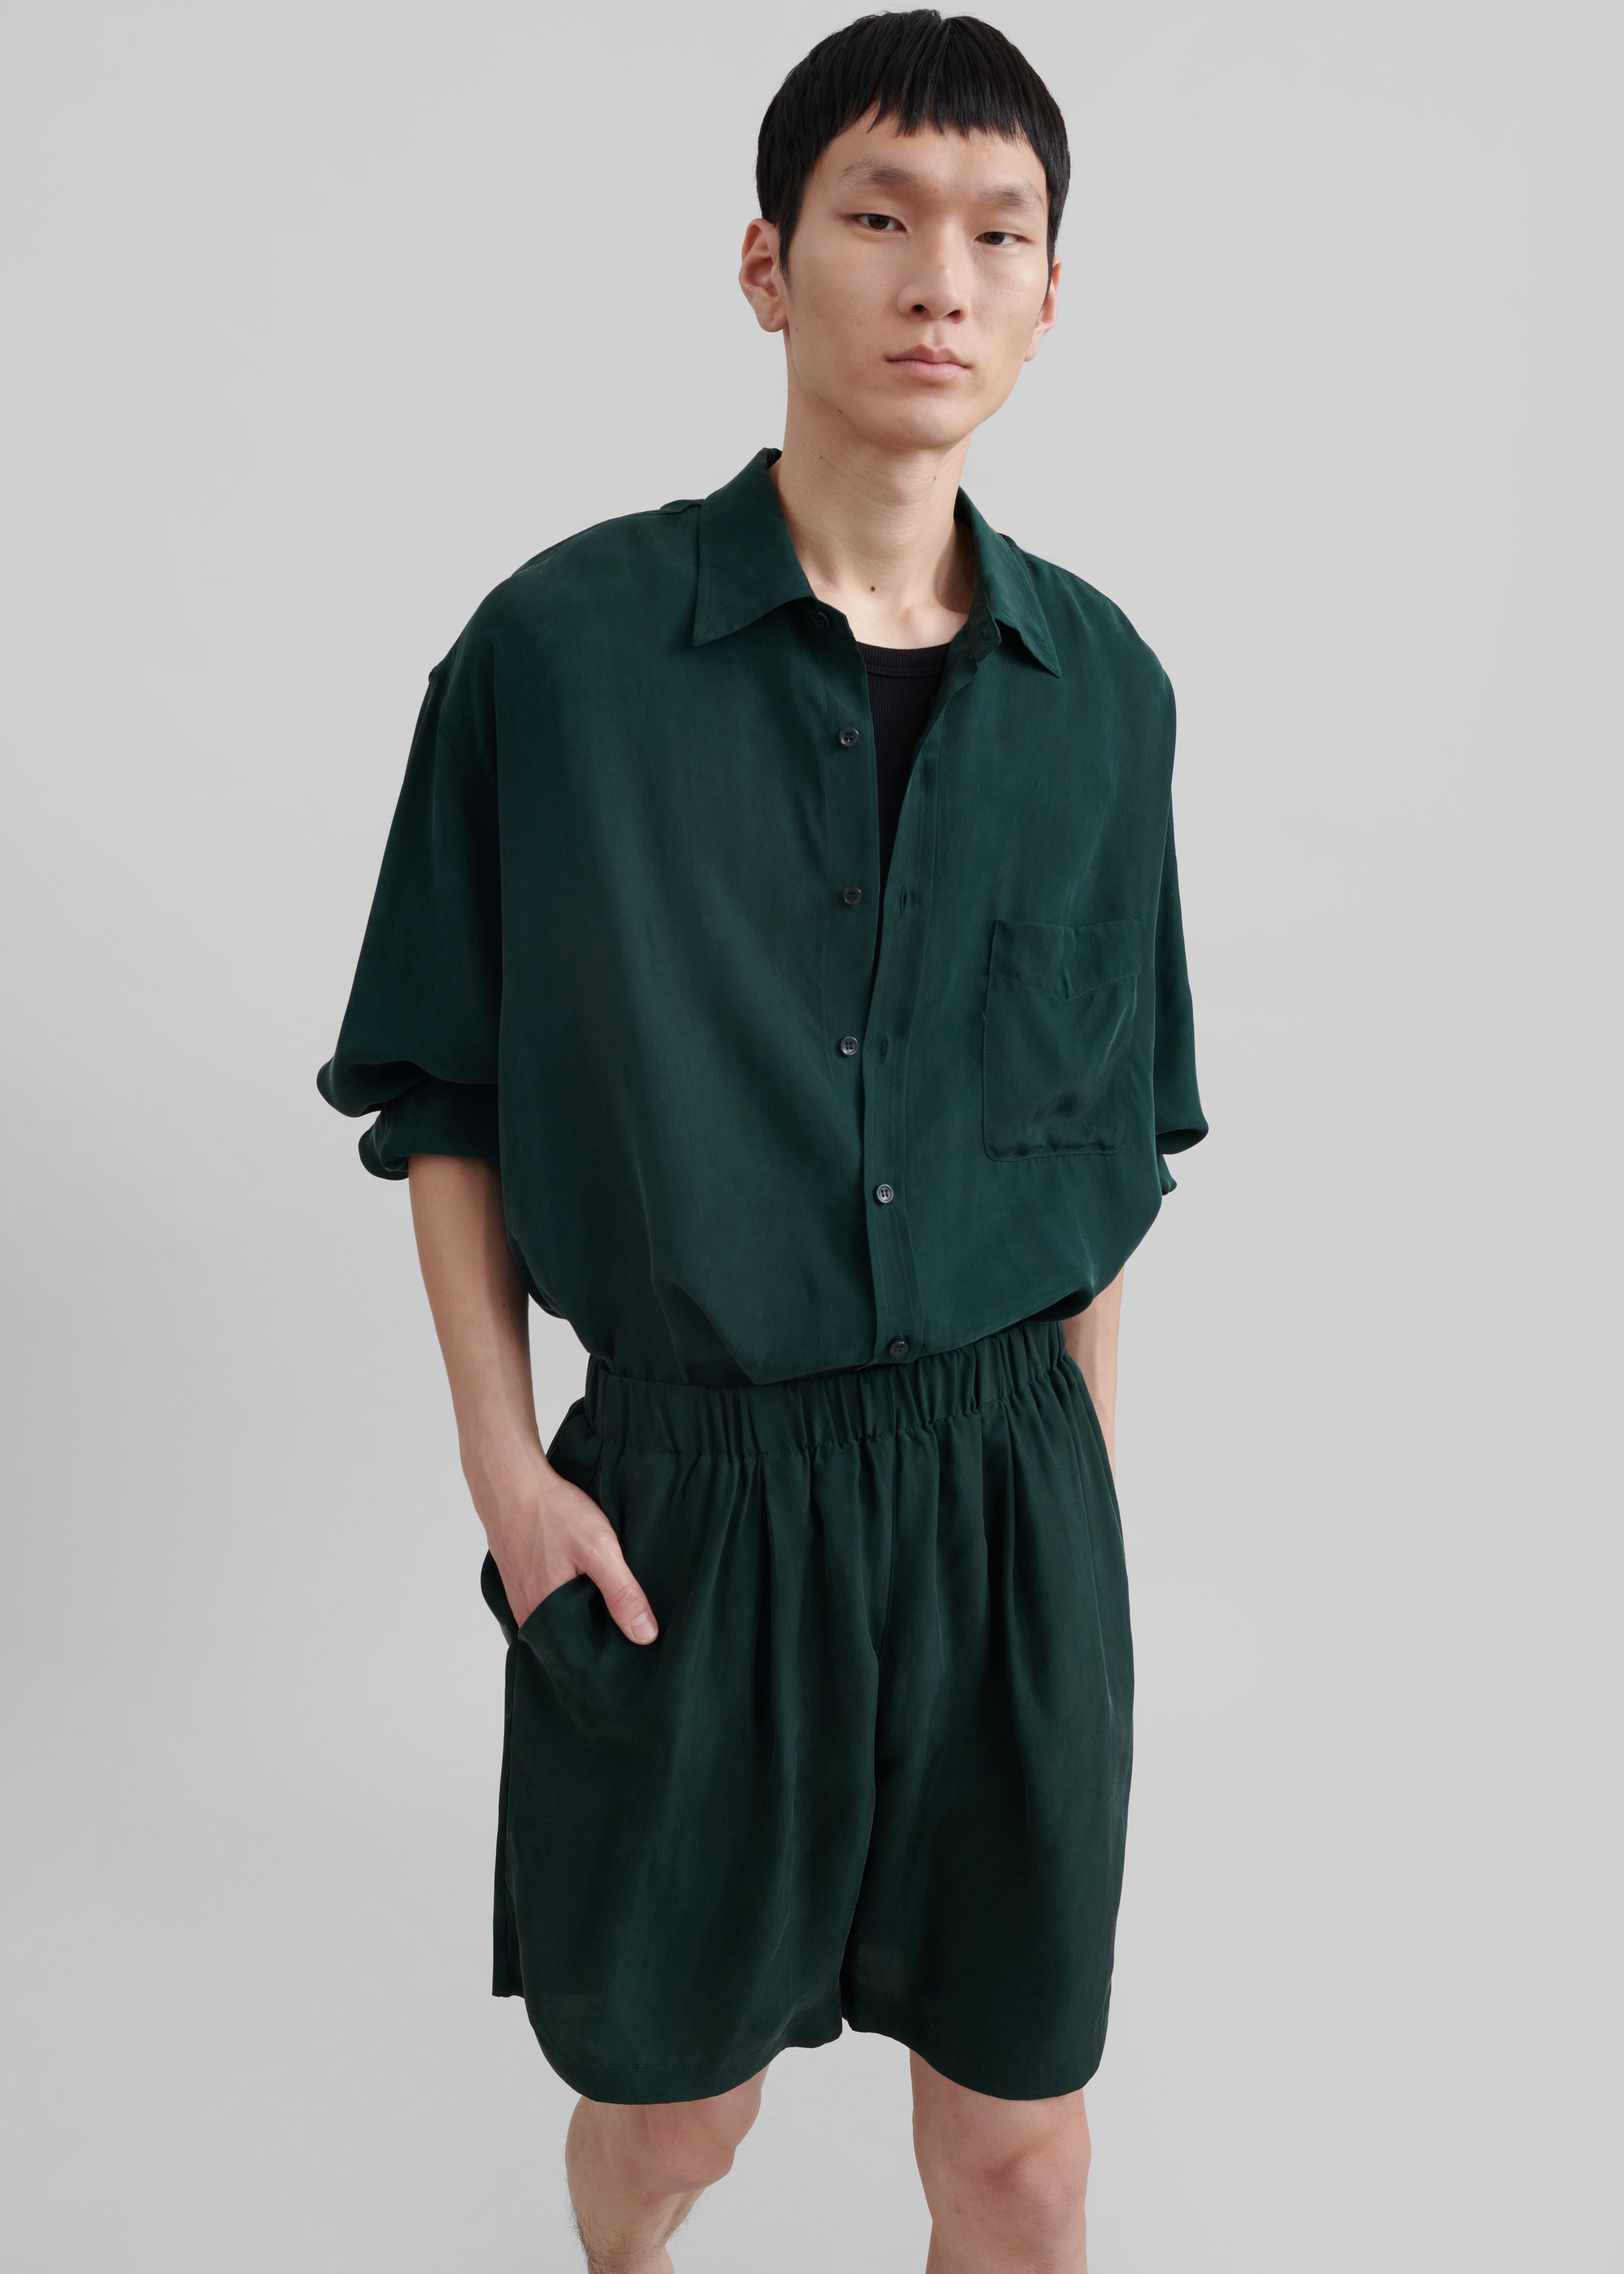 Leland Silky Shirt - Forest Green - 7